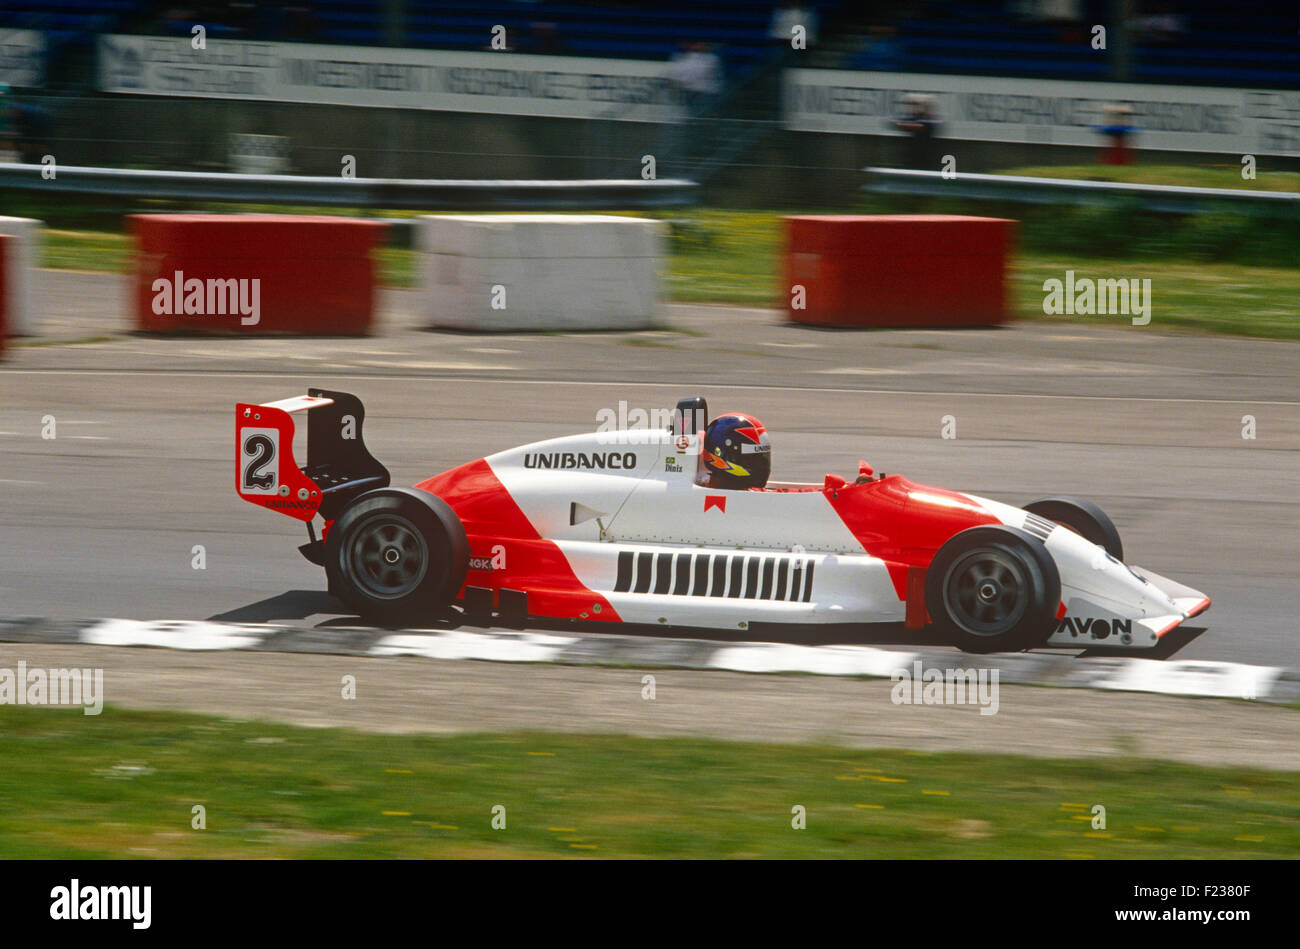 Pedro Diniz nella sua Marlboro Formula 3 racing car. Foto Stock